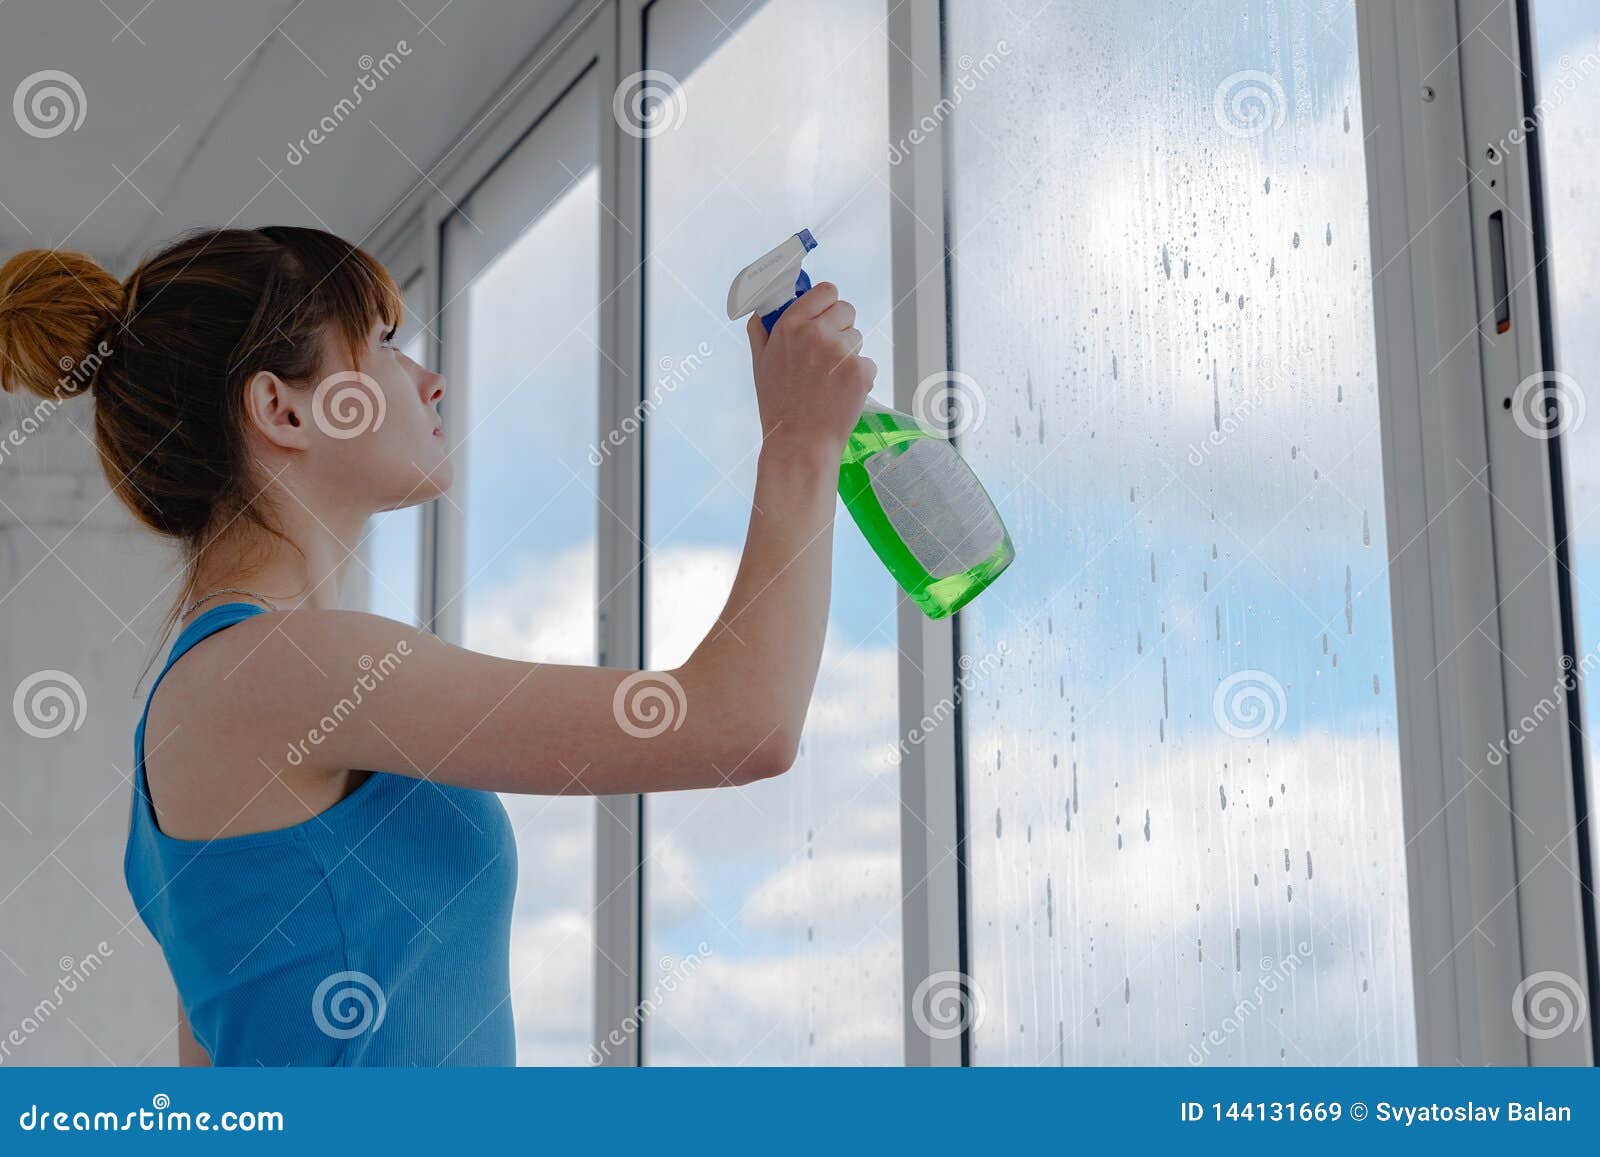 Мытье окон сколько. Мойка окон клининг. Девушка моет окно. Моем окна. Опасное мытье окон.